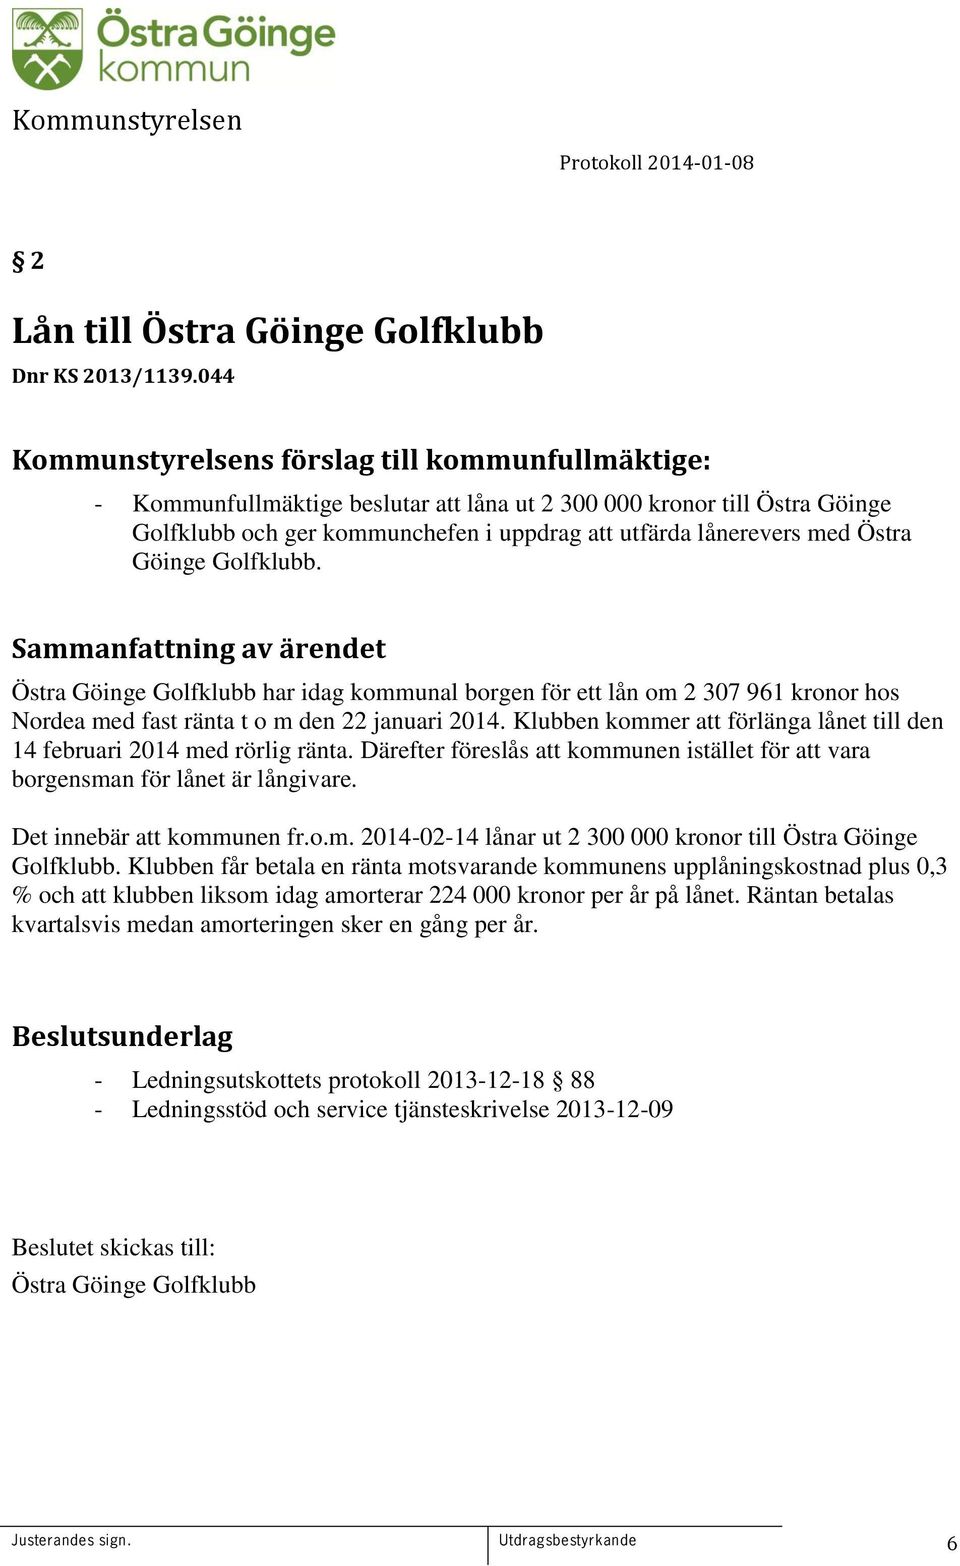 Östra Göinge Golfklubb. Östra Göinge Golfklubb har idag kommunal borgen för ett lån om 2 307 961 kronor hos Nordea med fast ränta t o m den 22 januari 2014.